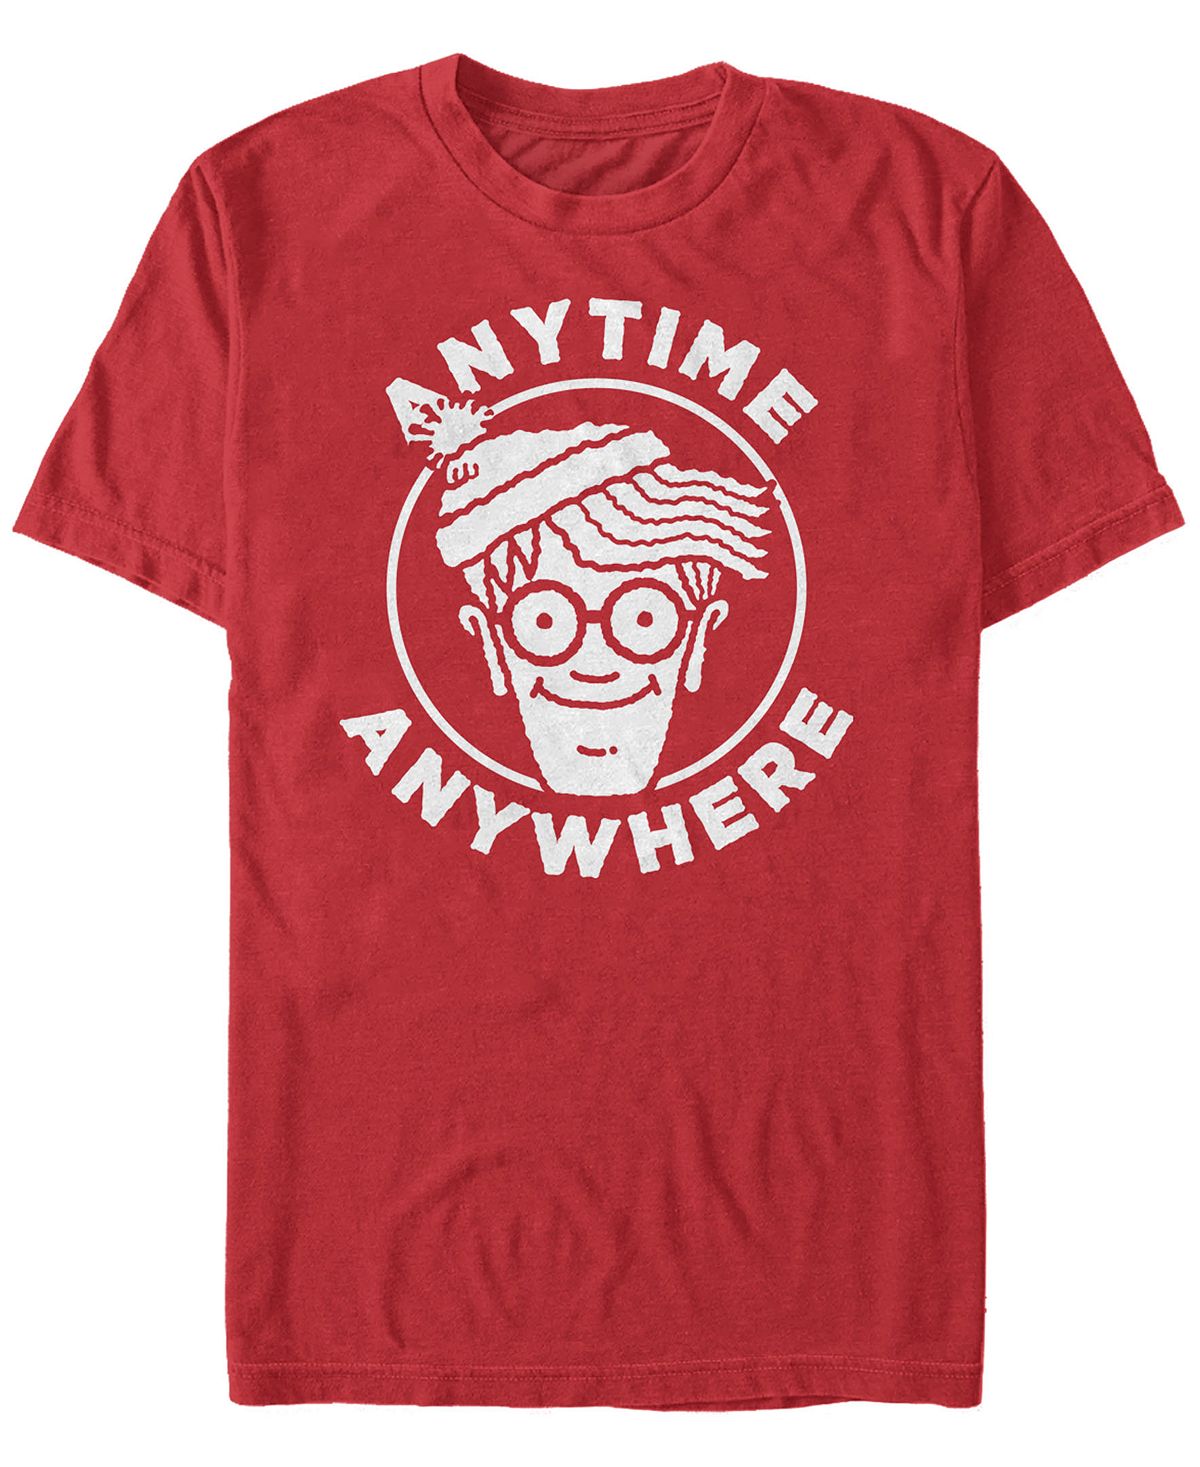 цена Мужская футболка с коротким рукавом и логотипом anytime anywhere с логотипом where's waldo Fifth Sun, красный